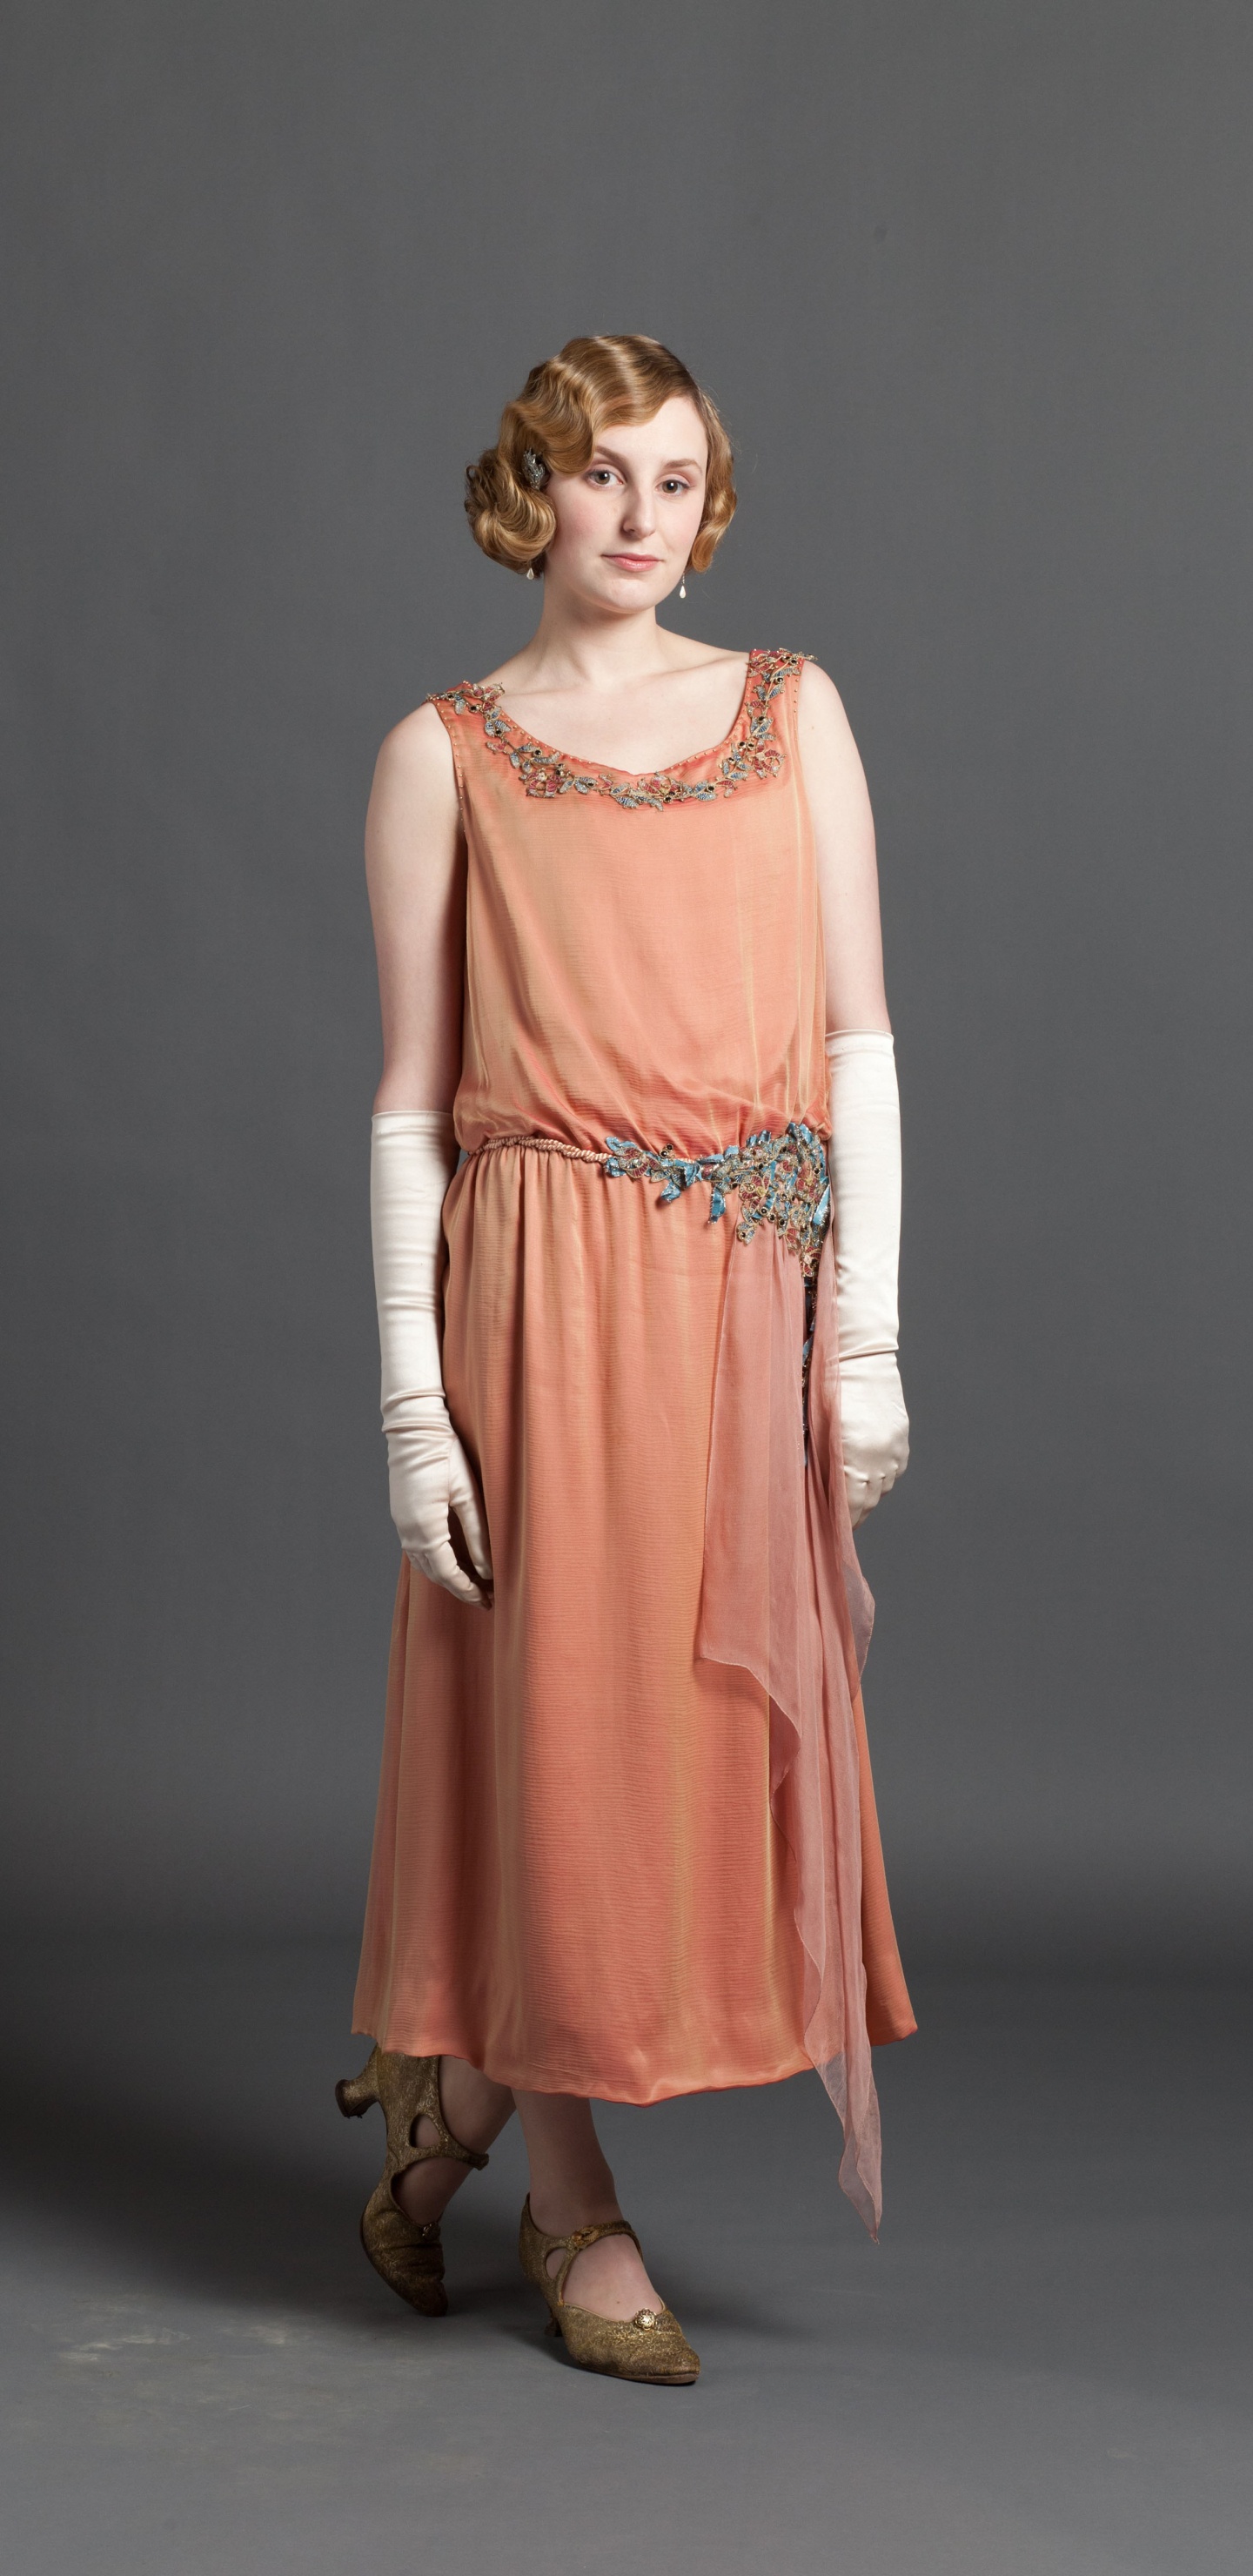 Laura Carmichael, Lady Edith Crawley, Downton Abbey, Dress, Clothing. Wallpaper in 1440x2960 Resolution